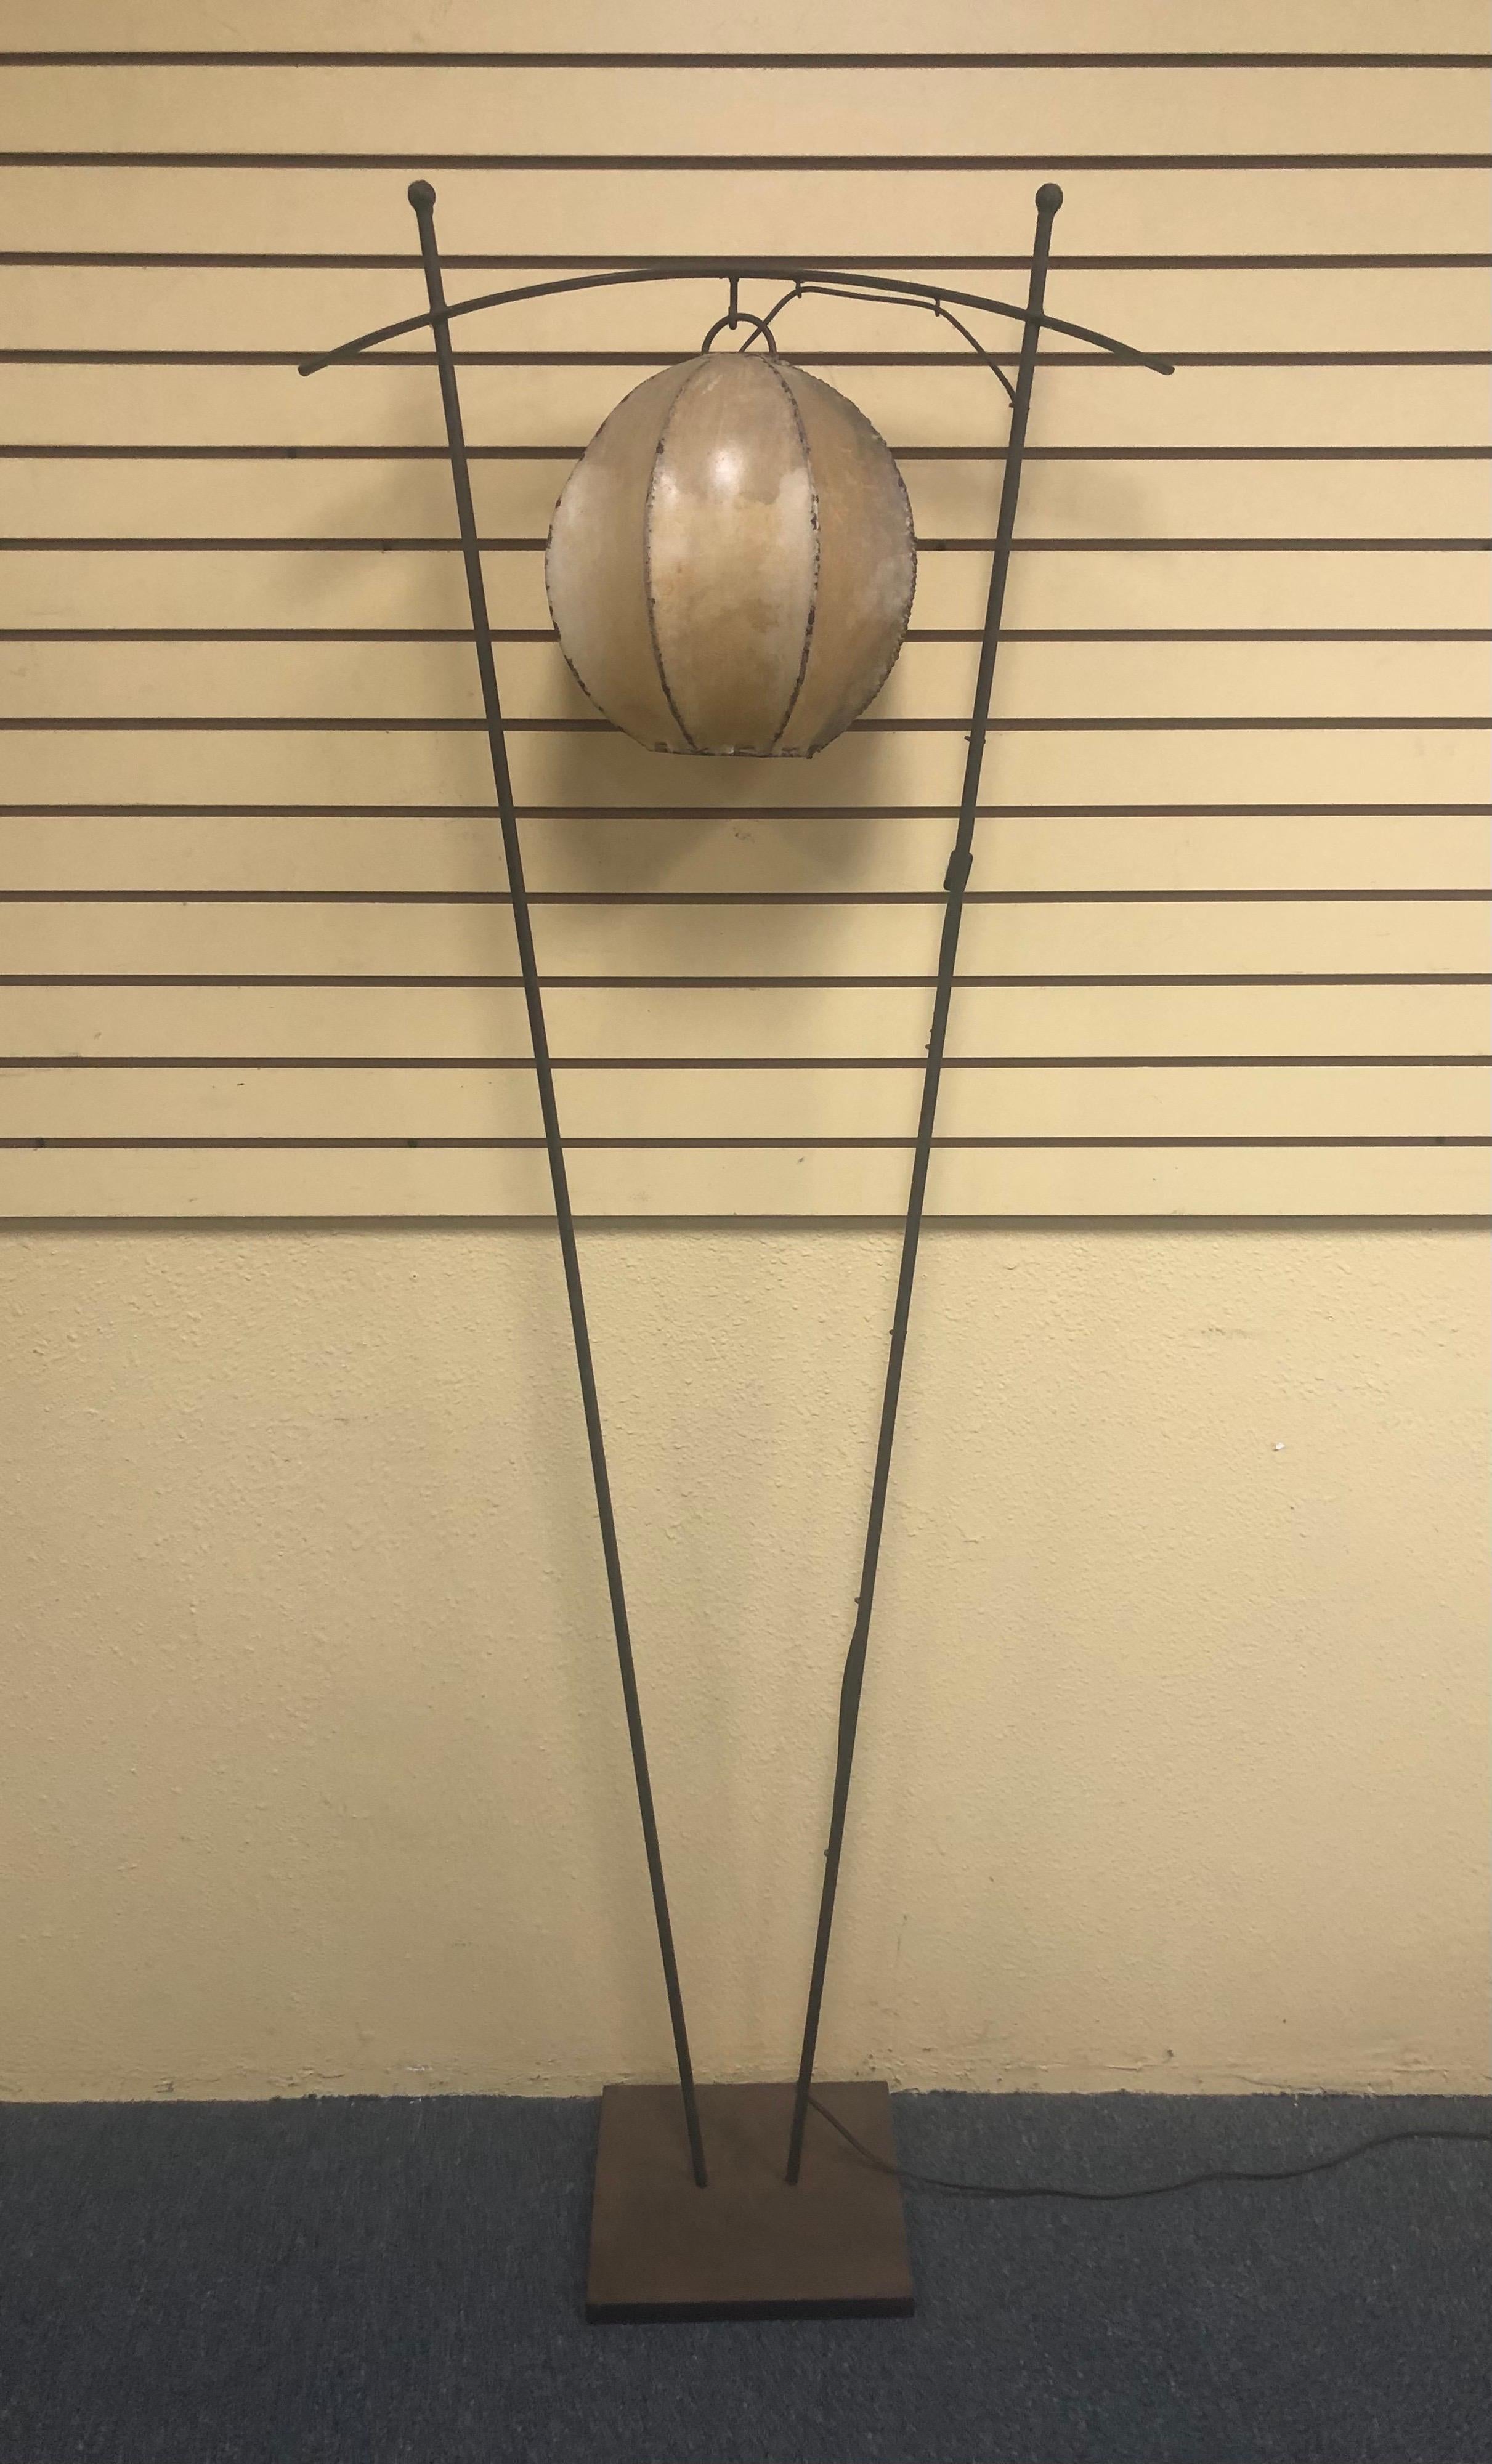 Maßgefertigte Stehlampe aus Schmiedeeisen mit rundem Lampenschirm aus Lammfell, ca. 1970er Jahre. Der schmiedeeiserne Lampensockel hat eine raue, rostige Patina; der Bodensockel misst 12